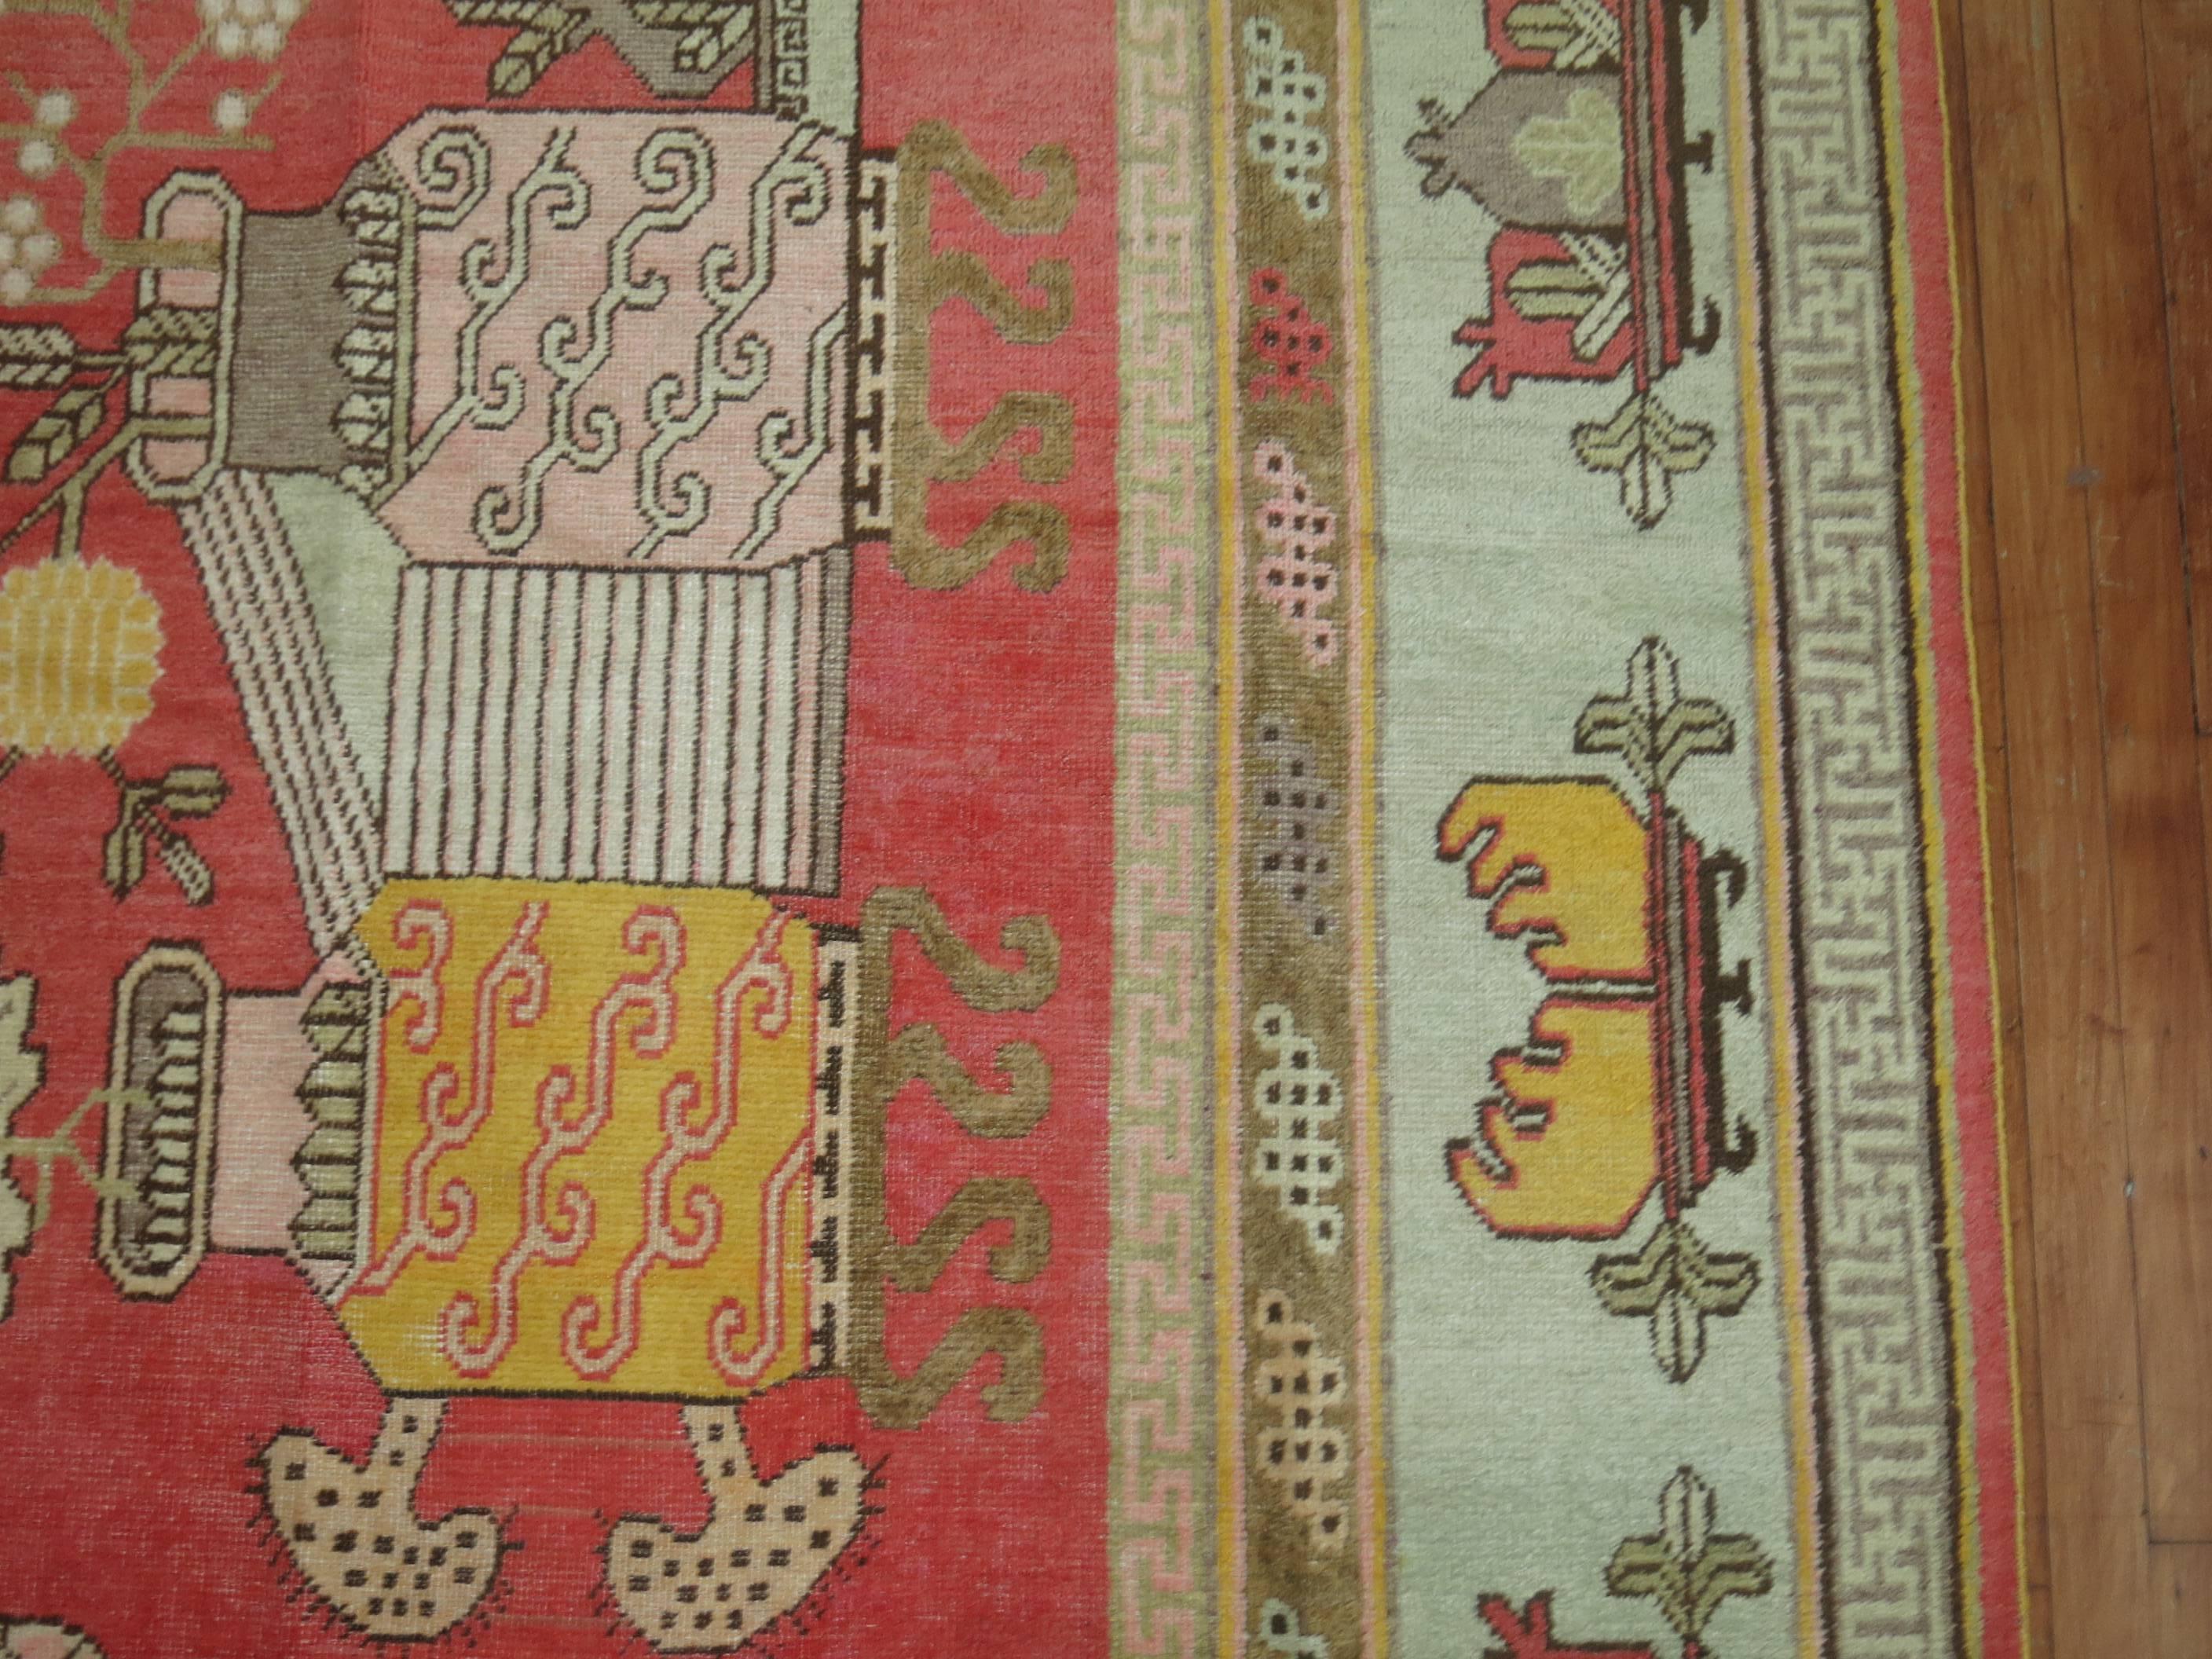 Grand tapis décoratif Khotan présentant un motif de vase de fleurs sur un fond rouge rosé doux. Produisant des tapis depuis le 17e siècle, avec un pic de production aux 18e et 19e siècles, les tapis de Khotan se caractérisent par des motifs